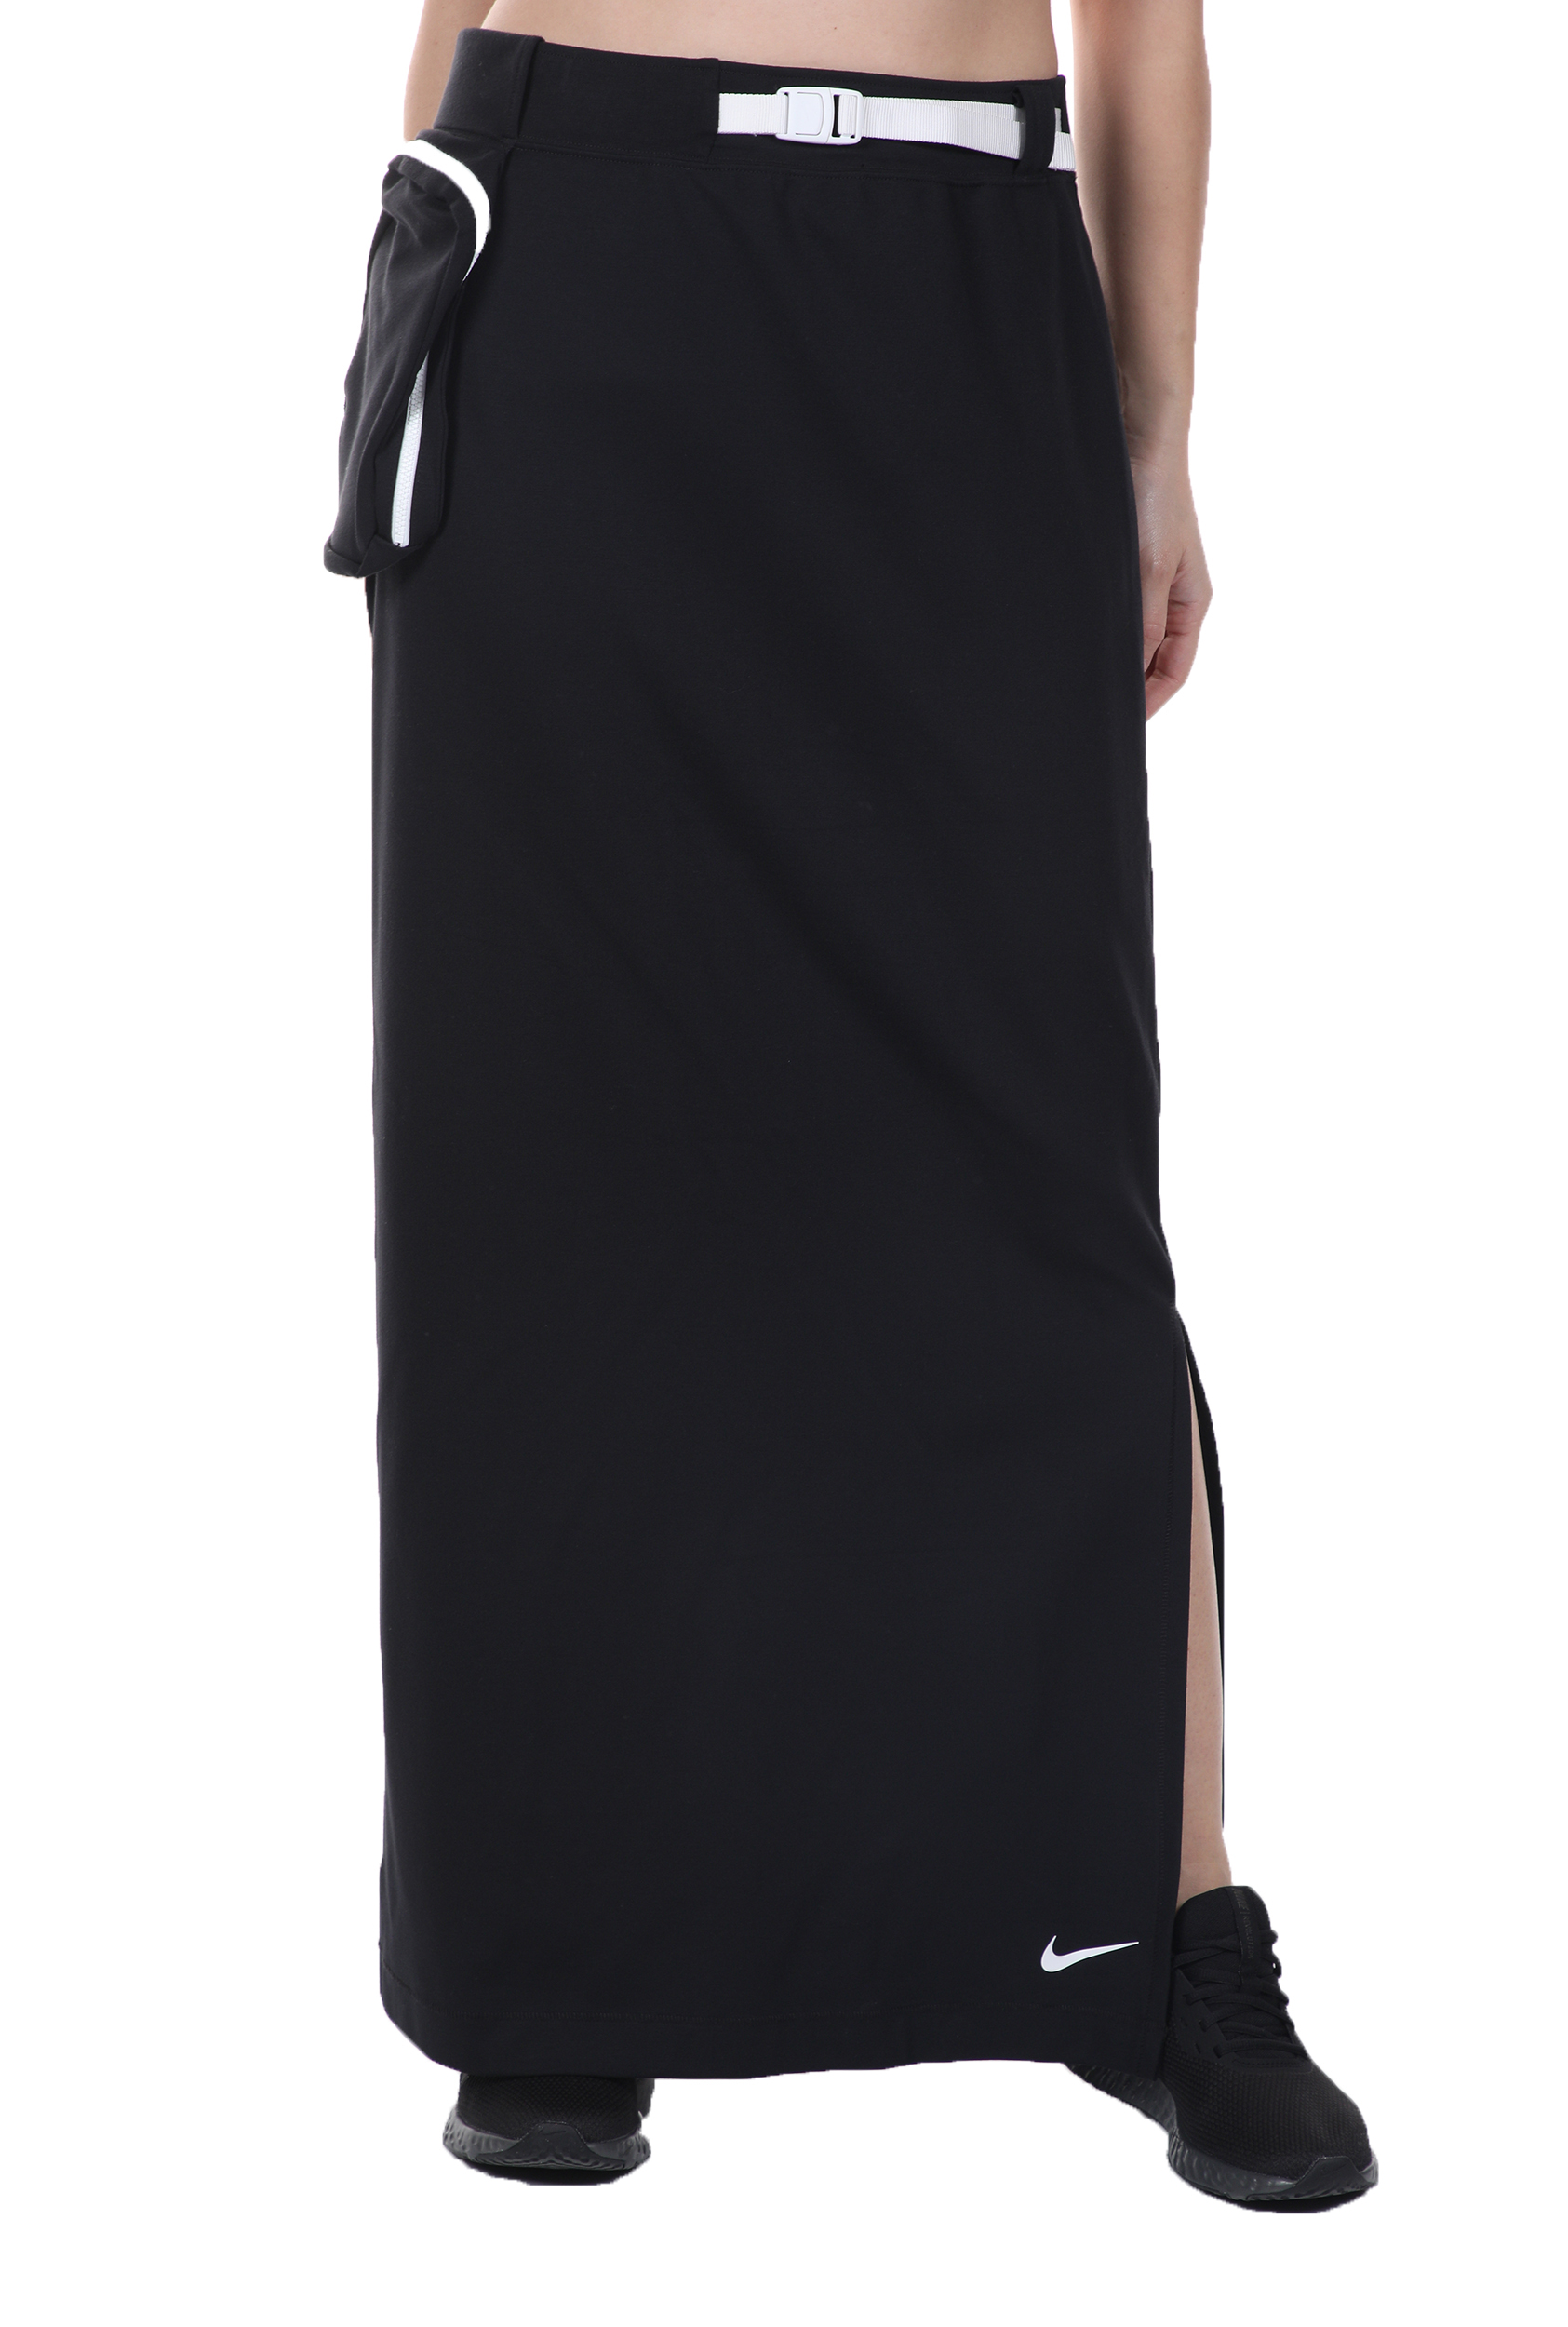 Γυναικεία/Ρούχα/Φούστες/Μάξι NIKE - Γυναικεία maxi φούστα NIKE NSW TECH PACK SKIRT μαύρη